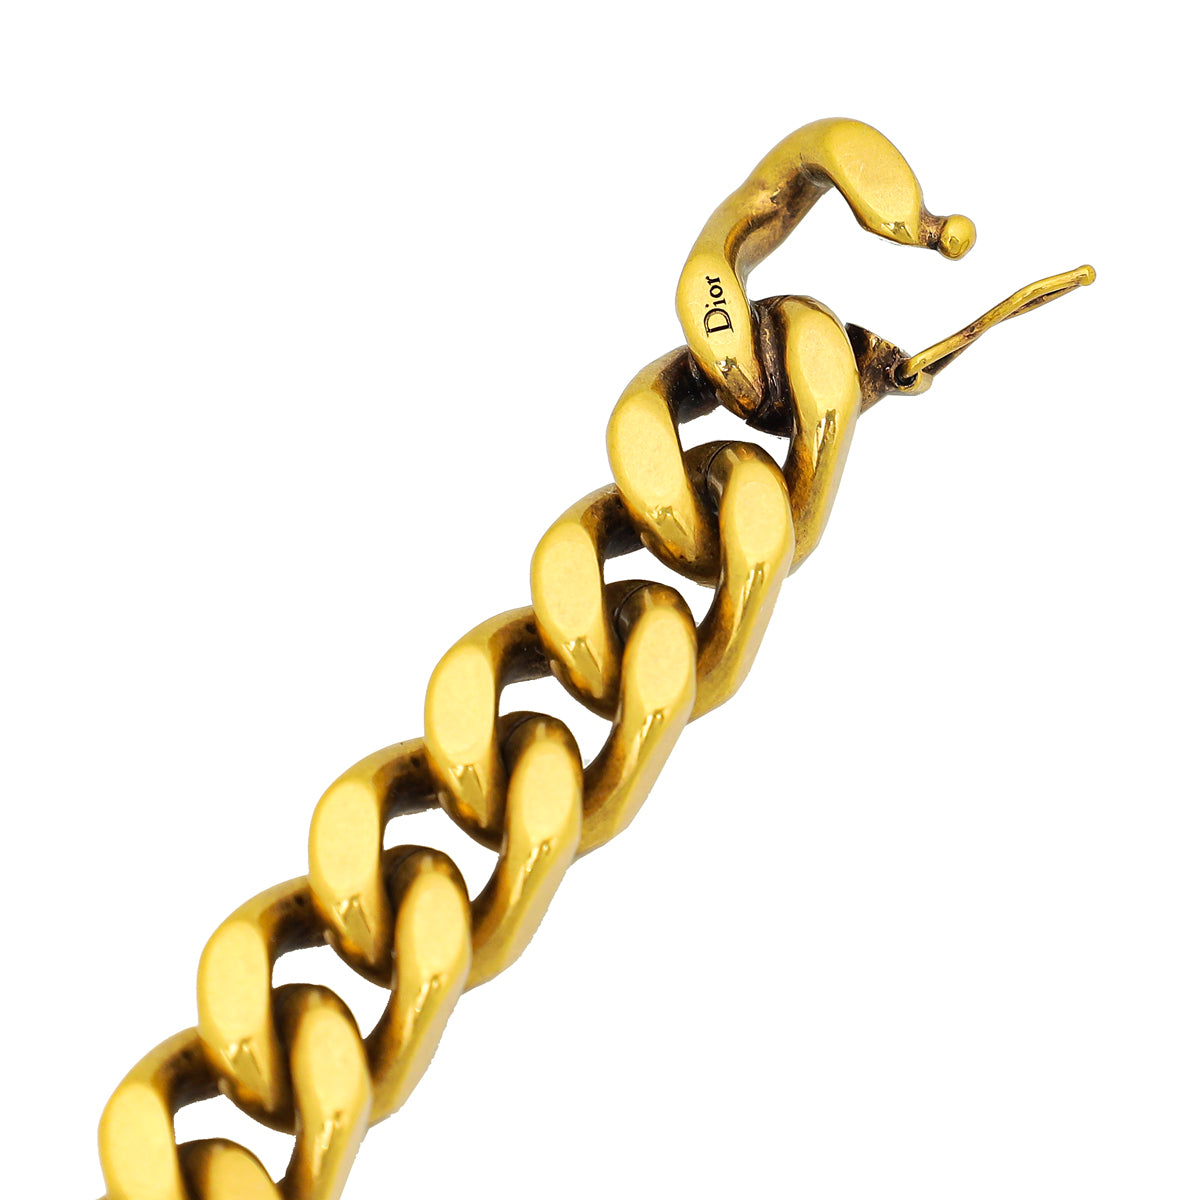 Christian Dior Vintage Gold Metal J'Adior Chain Bracelet